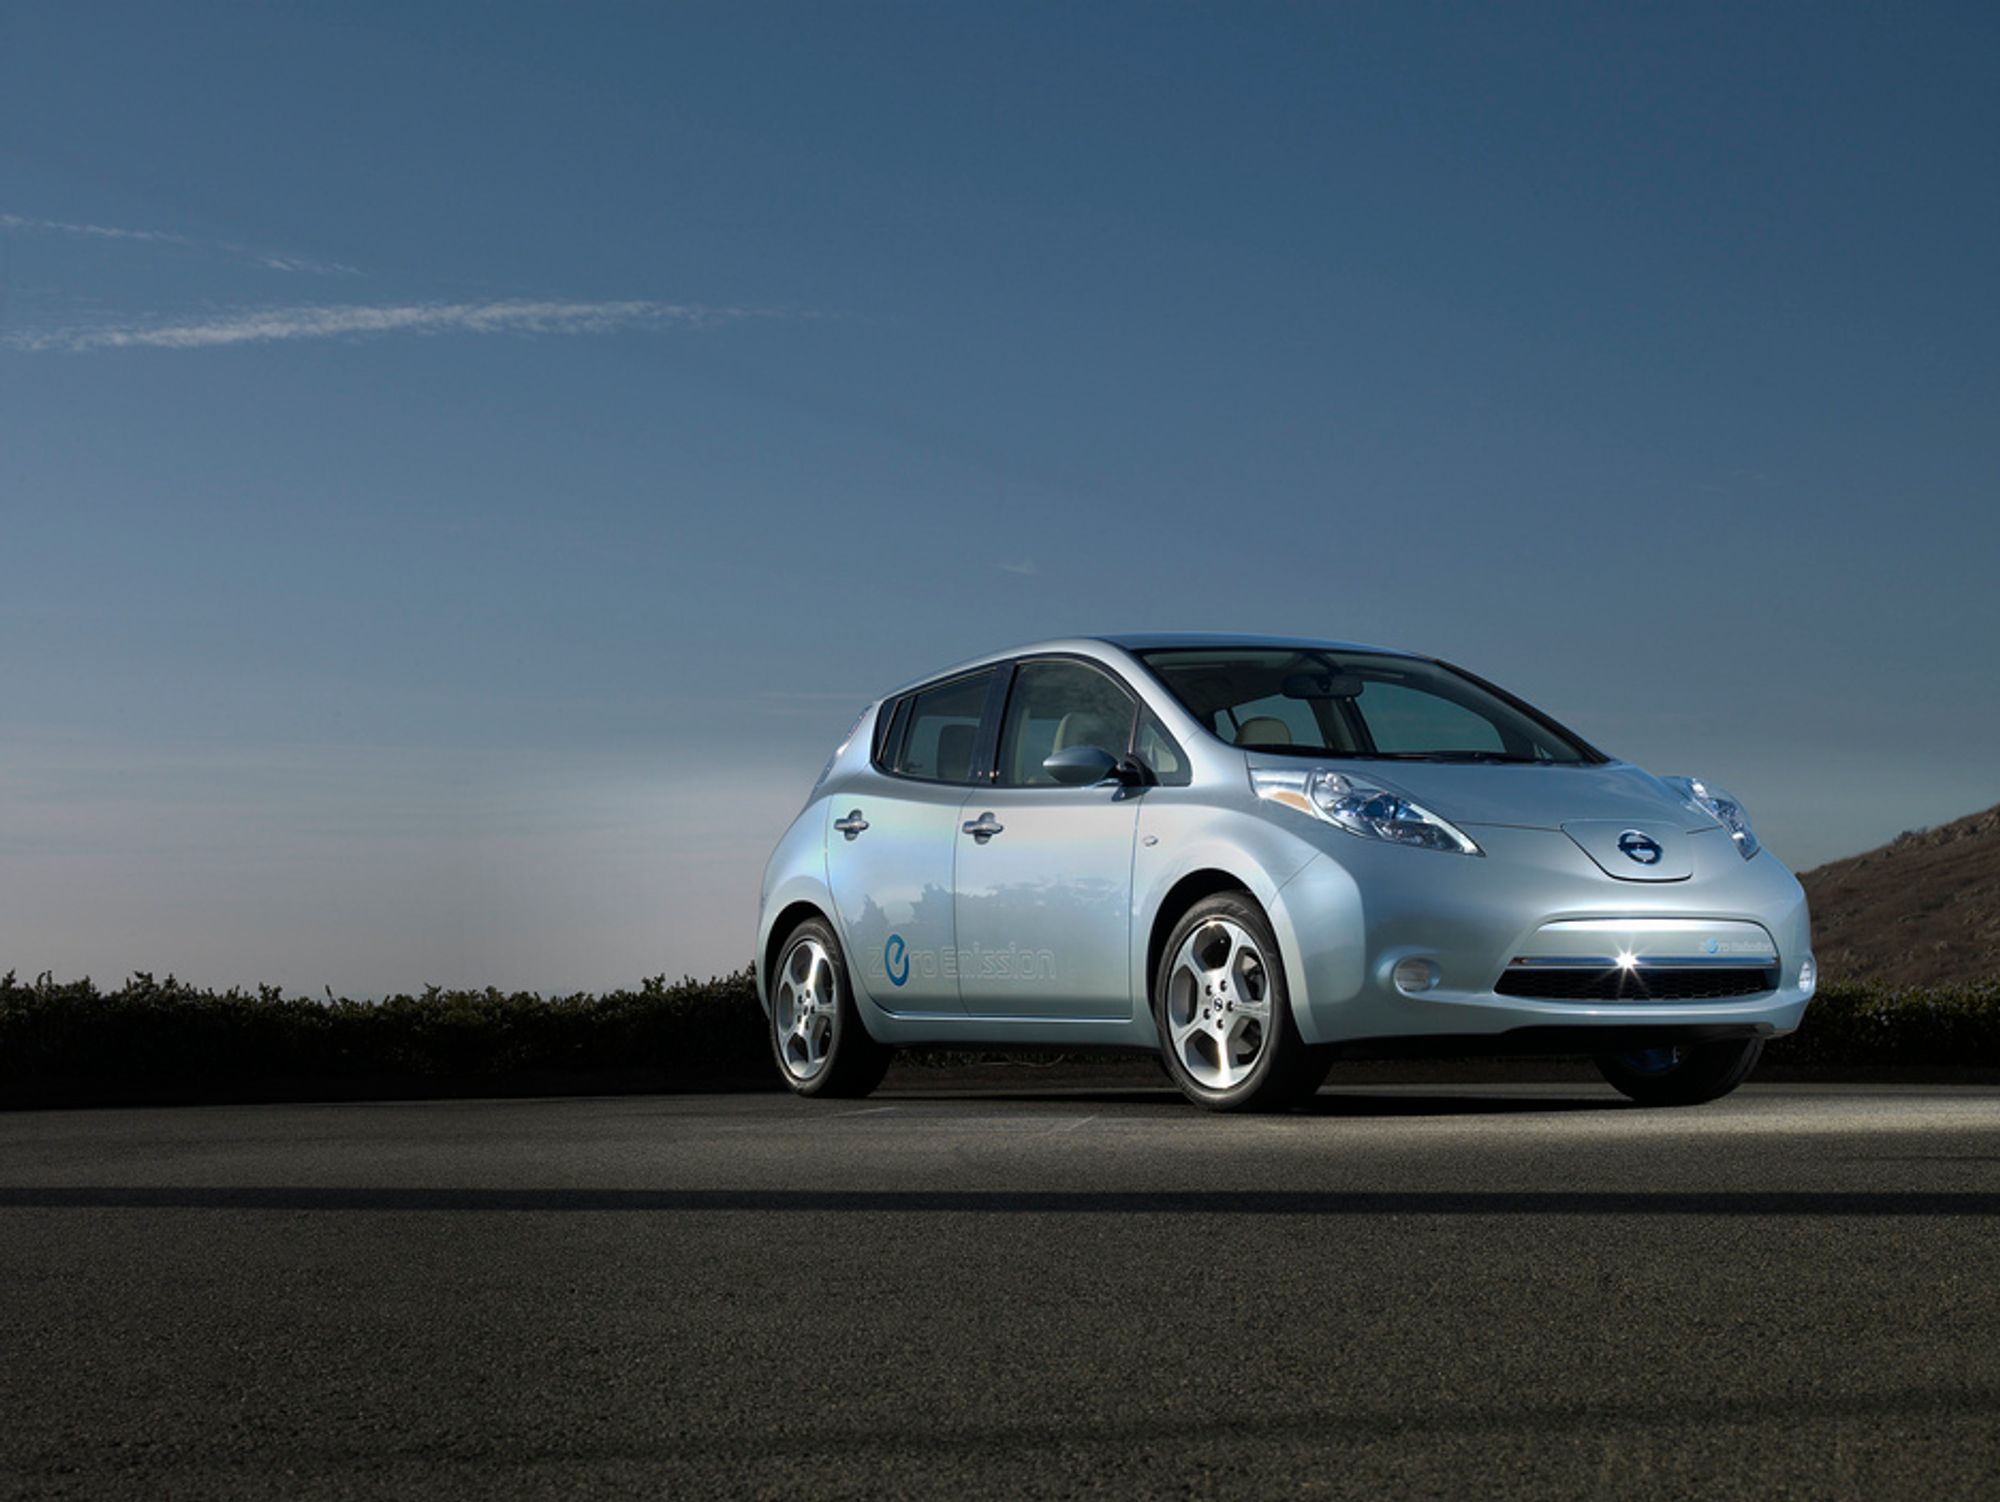 Nissan Leaf er kåret til Årets bil 2011 av europeiske biljournalister.